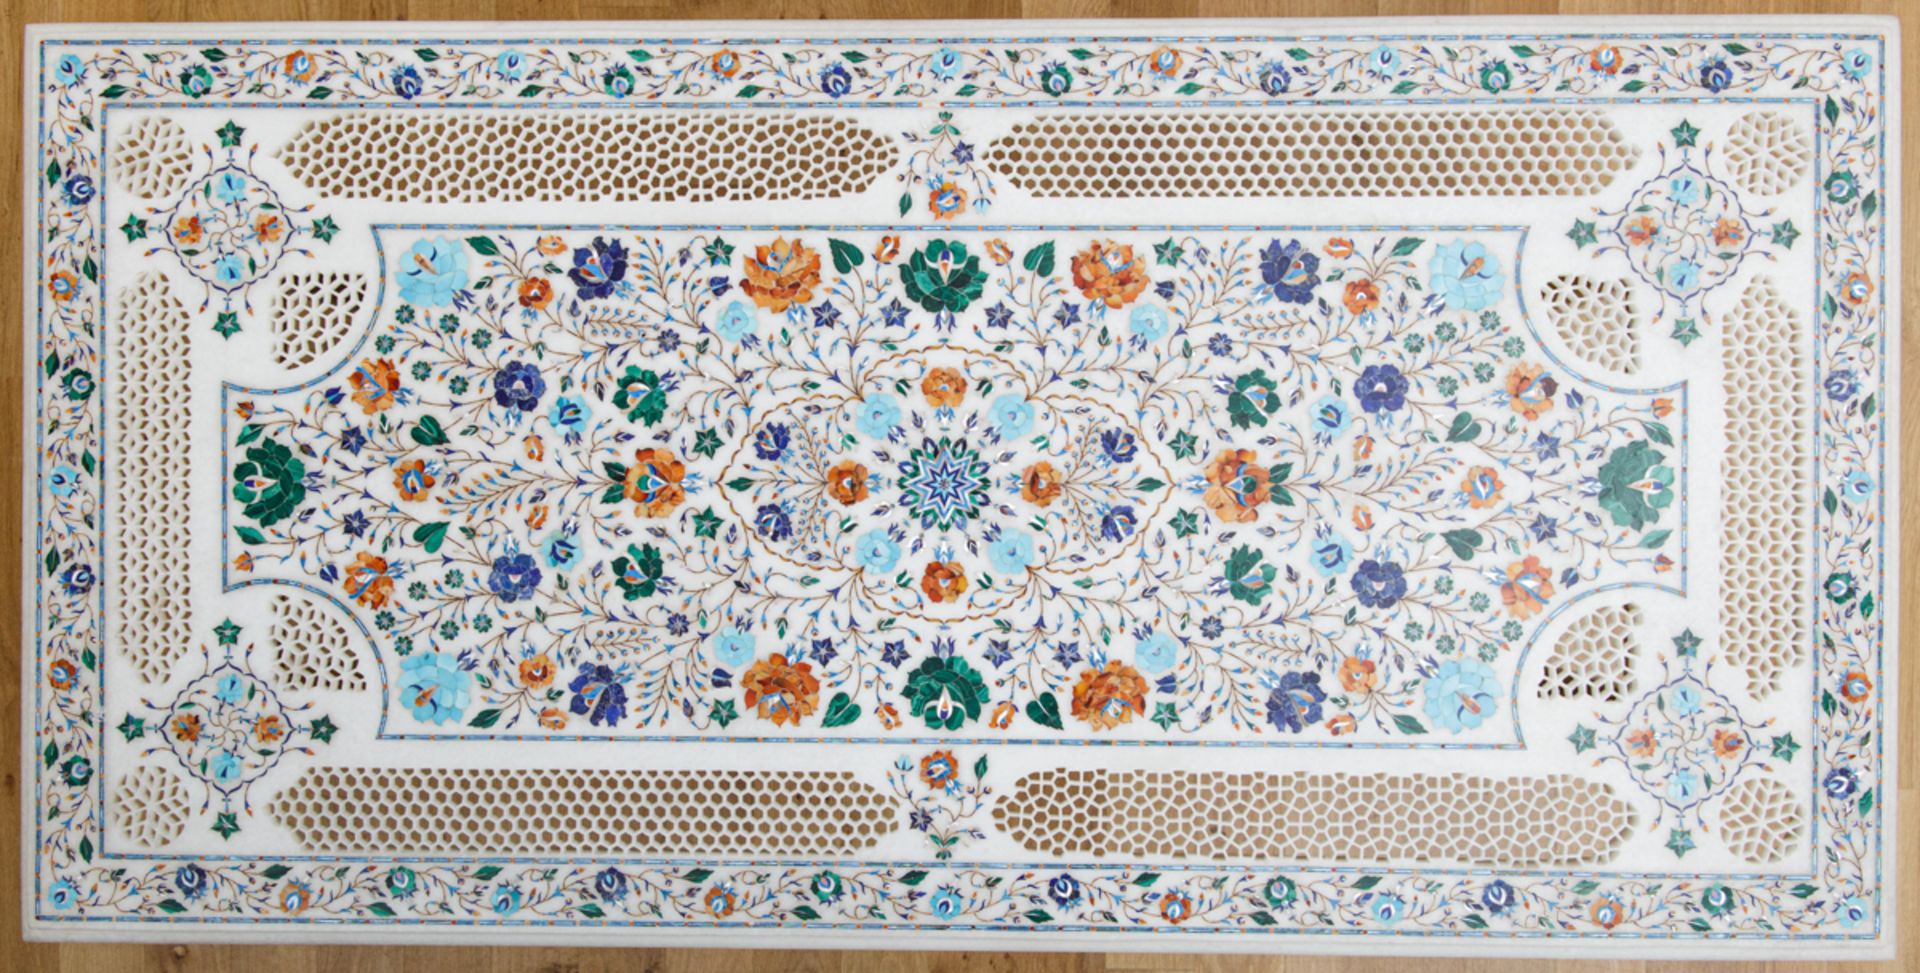 Rechteckiger Intarsien-Tisch, Indien, 20. Jh. - Image 2 of 2